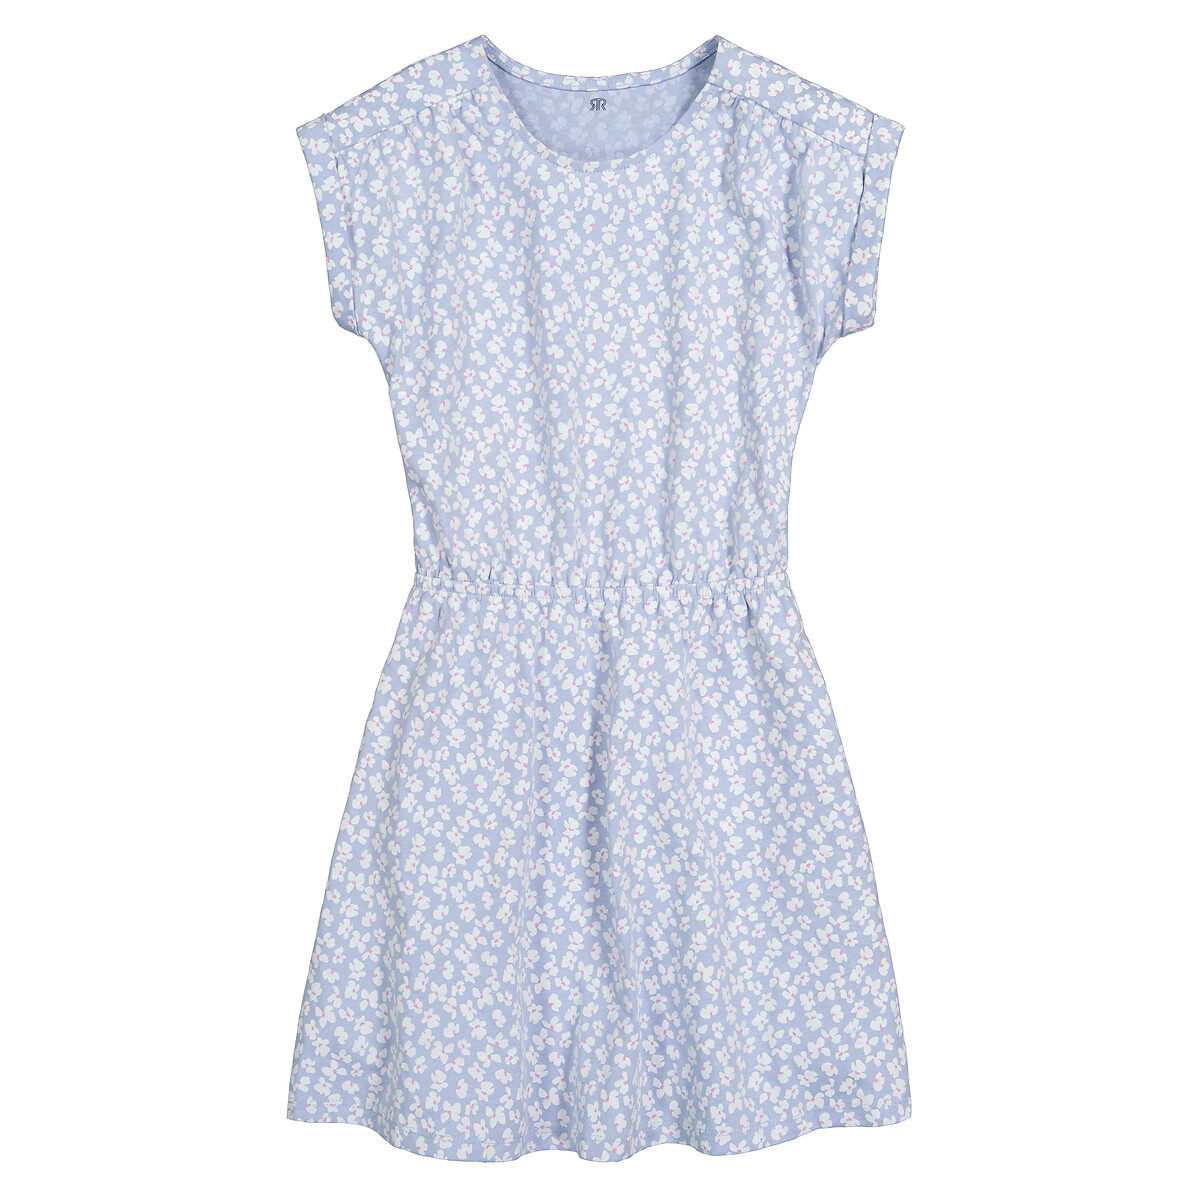 Платье С короткими рукавами и принтом цветы 6 лет - 114 см синий LaRedoute, размер 6 лет - 114 см - фото 3